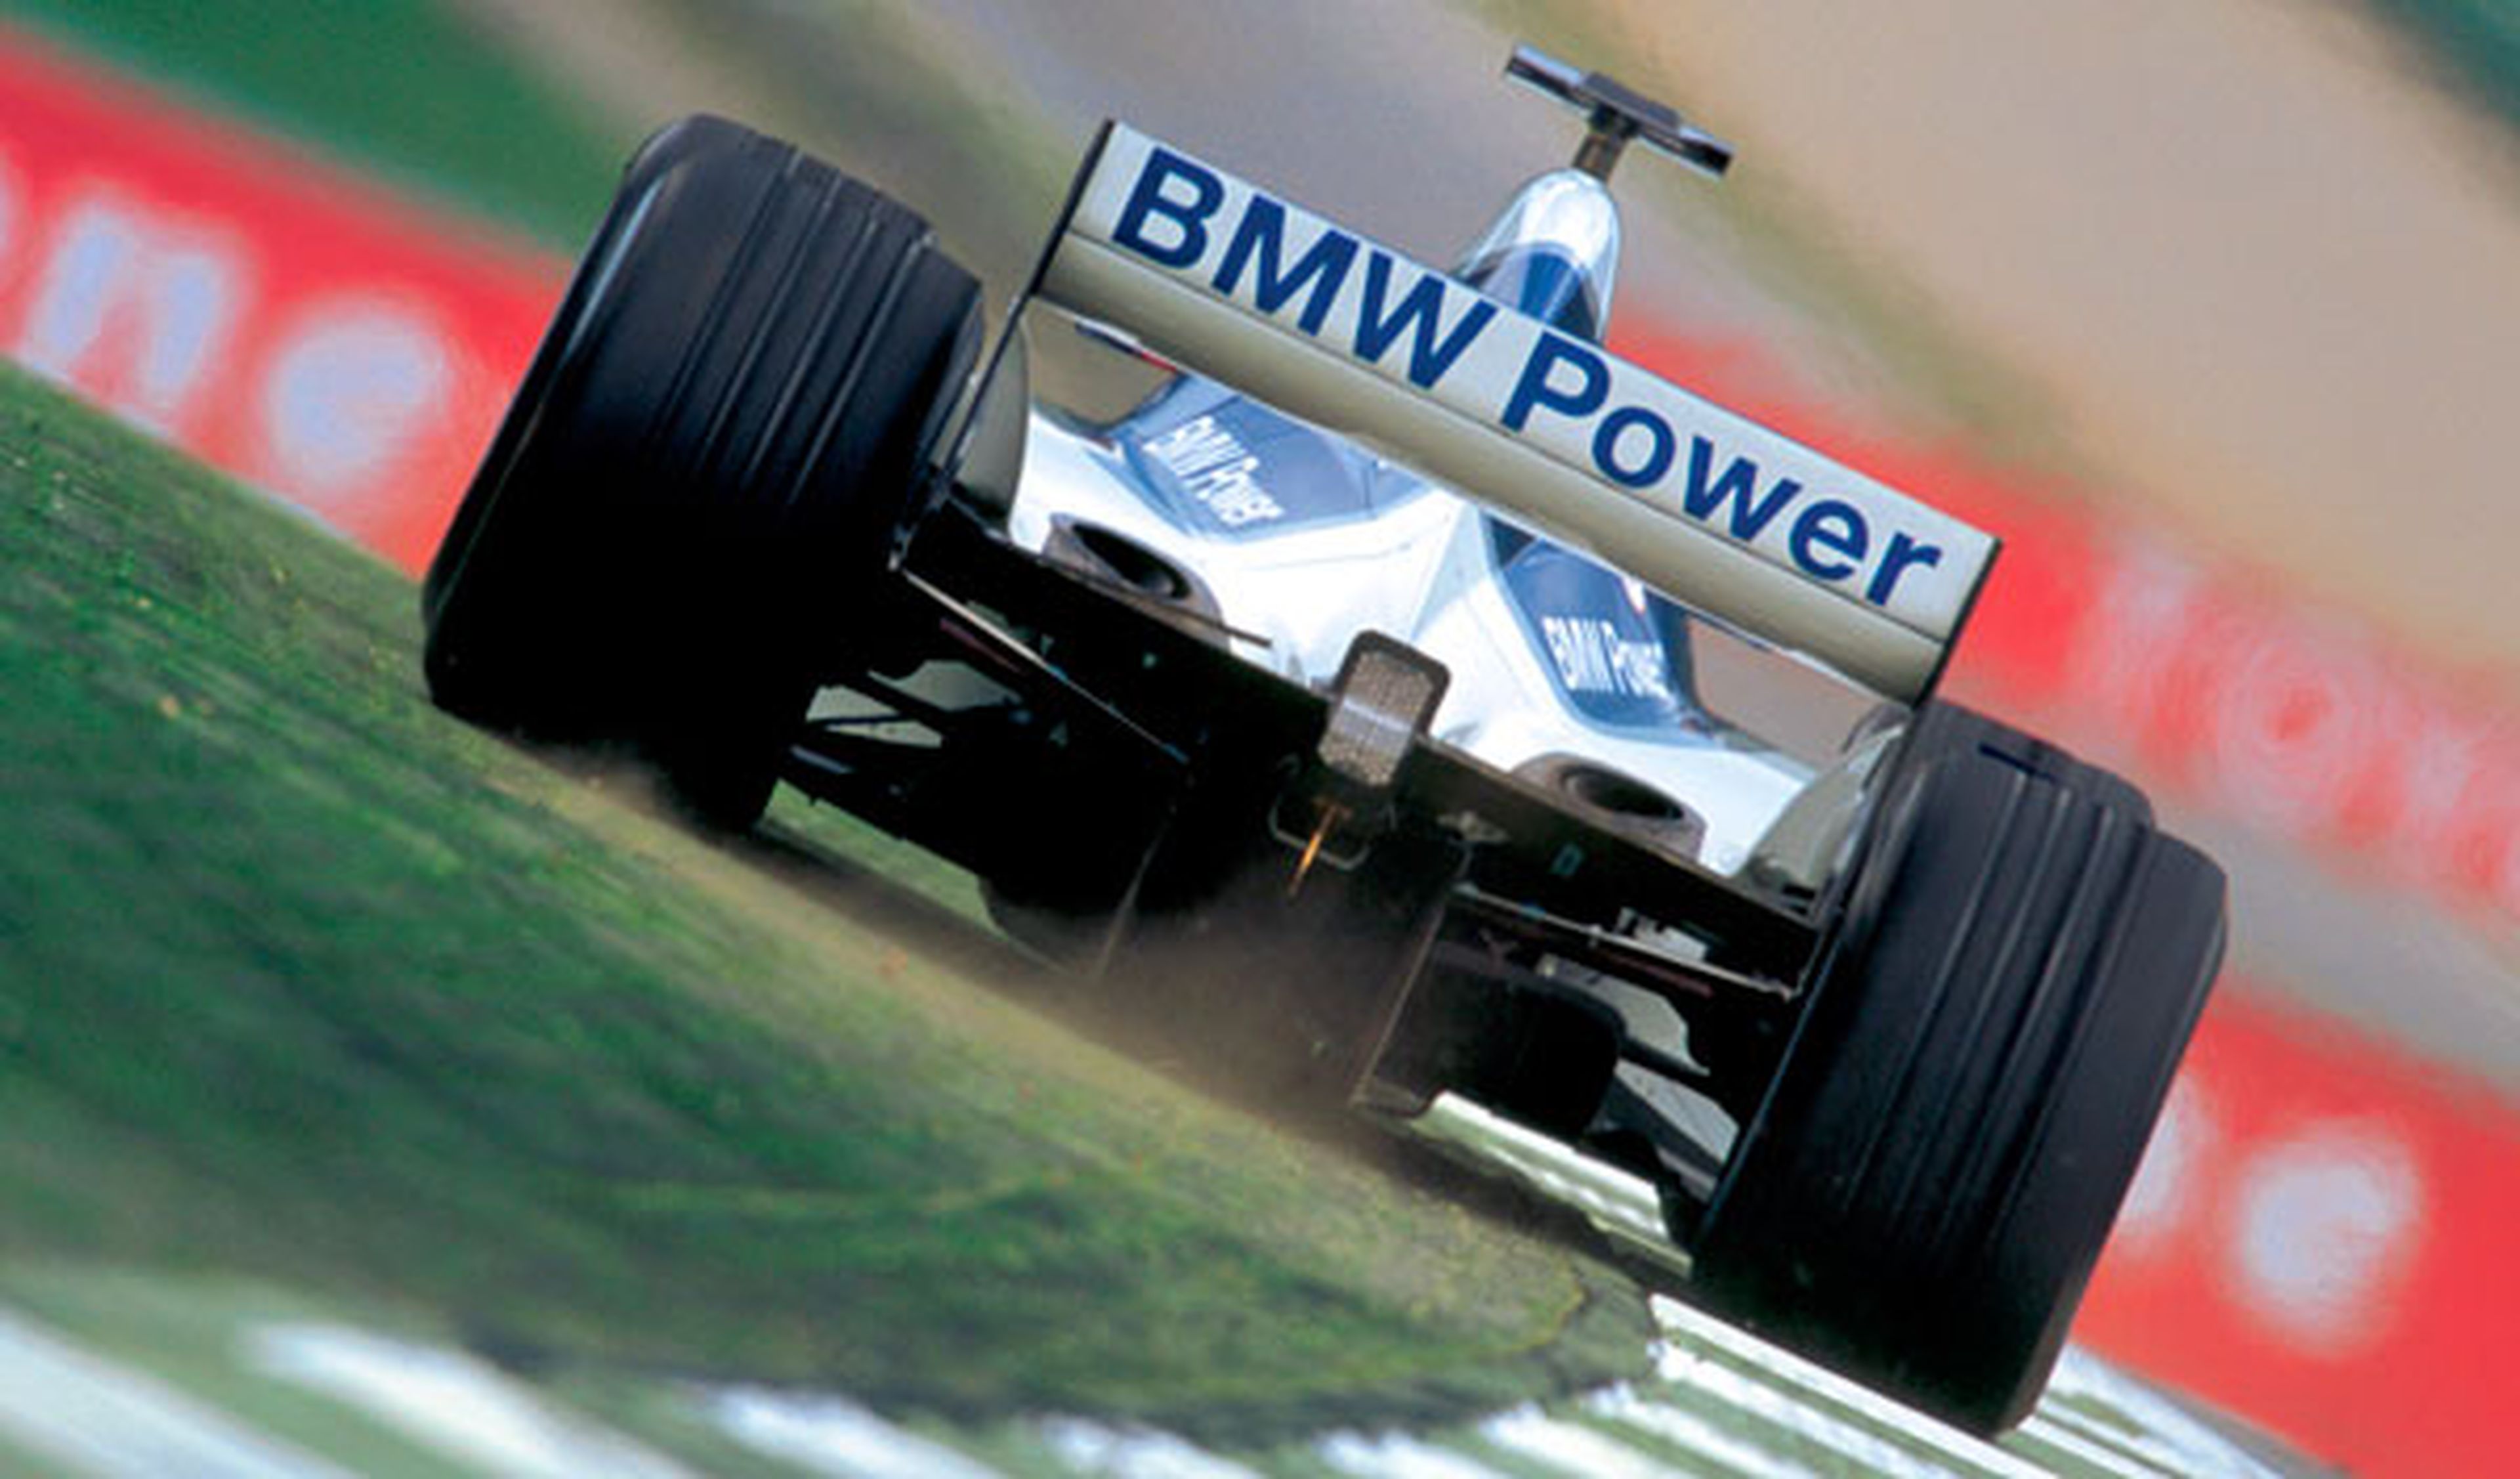 BMW podría volver a la Fórmula 1 con motores V6 turbo